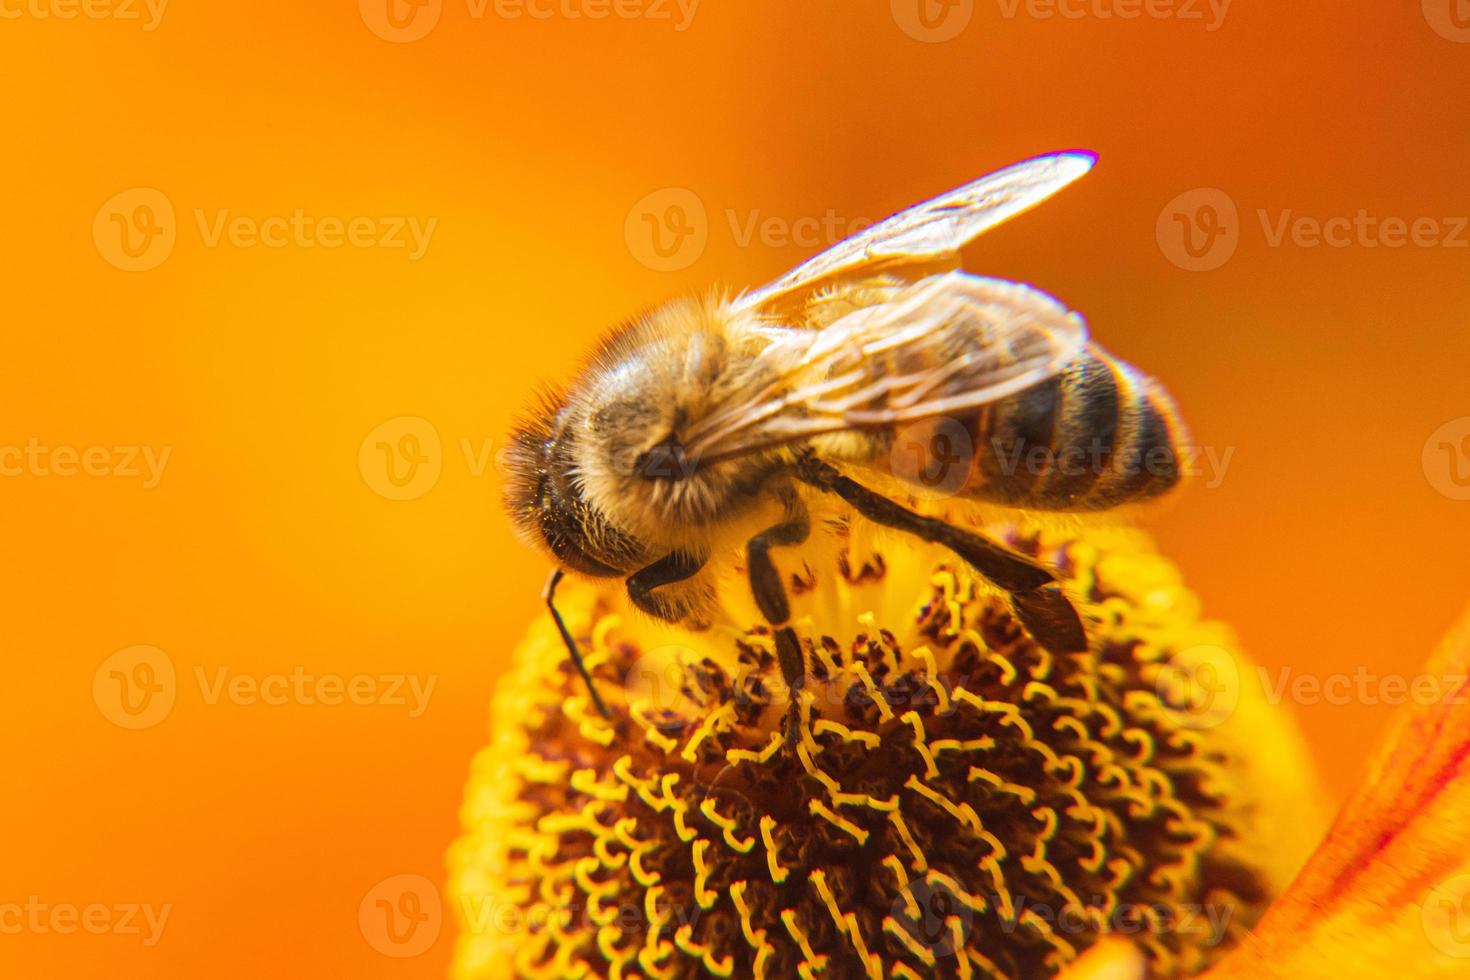 honungsbi täckt med gul pollen drick nektar, pollinerande blomma. inspirerande naturliga blommor våren eller sommaren blommande trädgård bakgrund. liv av insekter, extrem makro närbild selektiv fokus foto